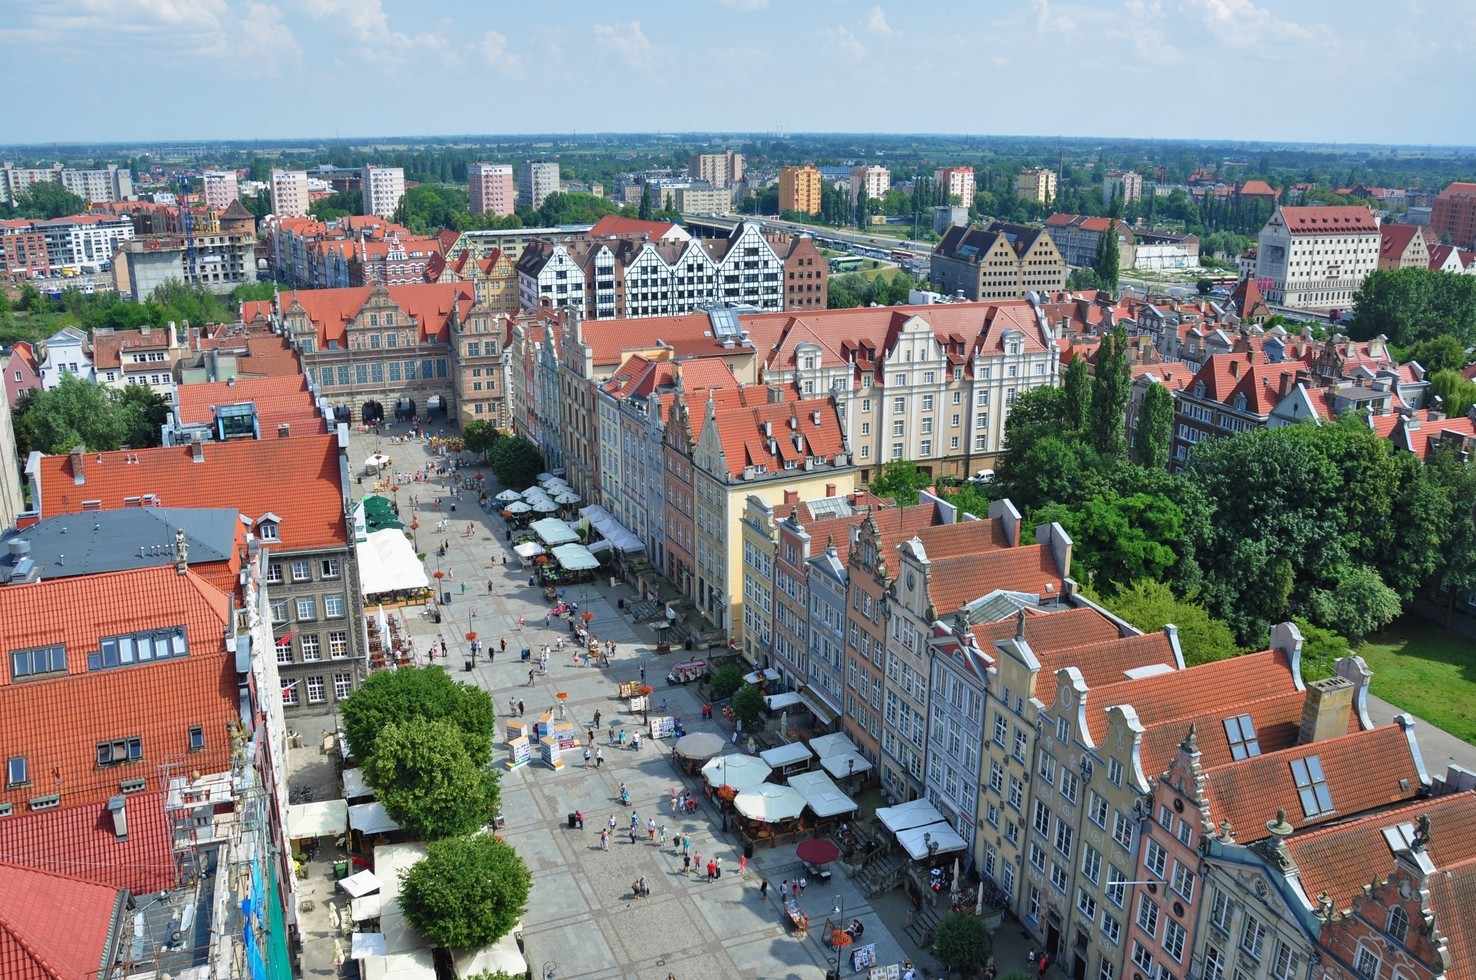 Large long market in gdansk